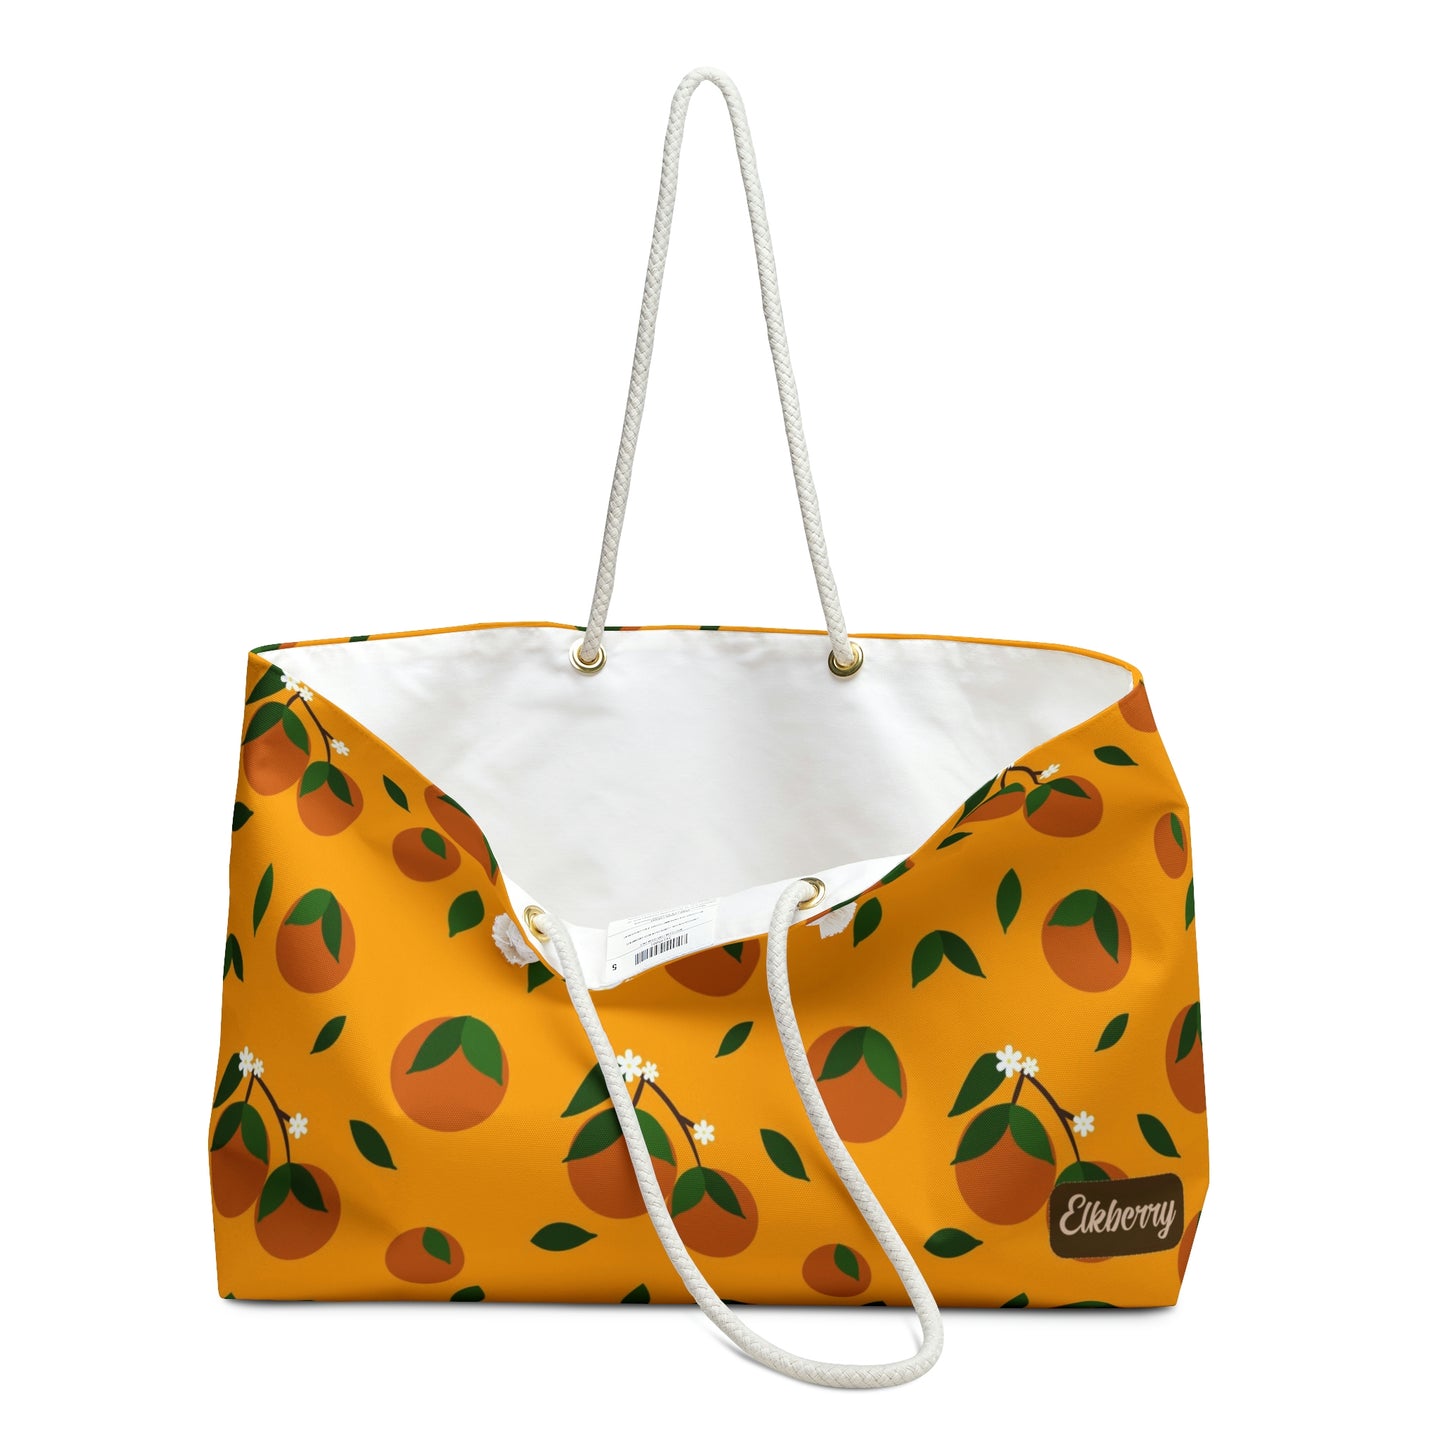 Weekender Tote Bag - Oranges